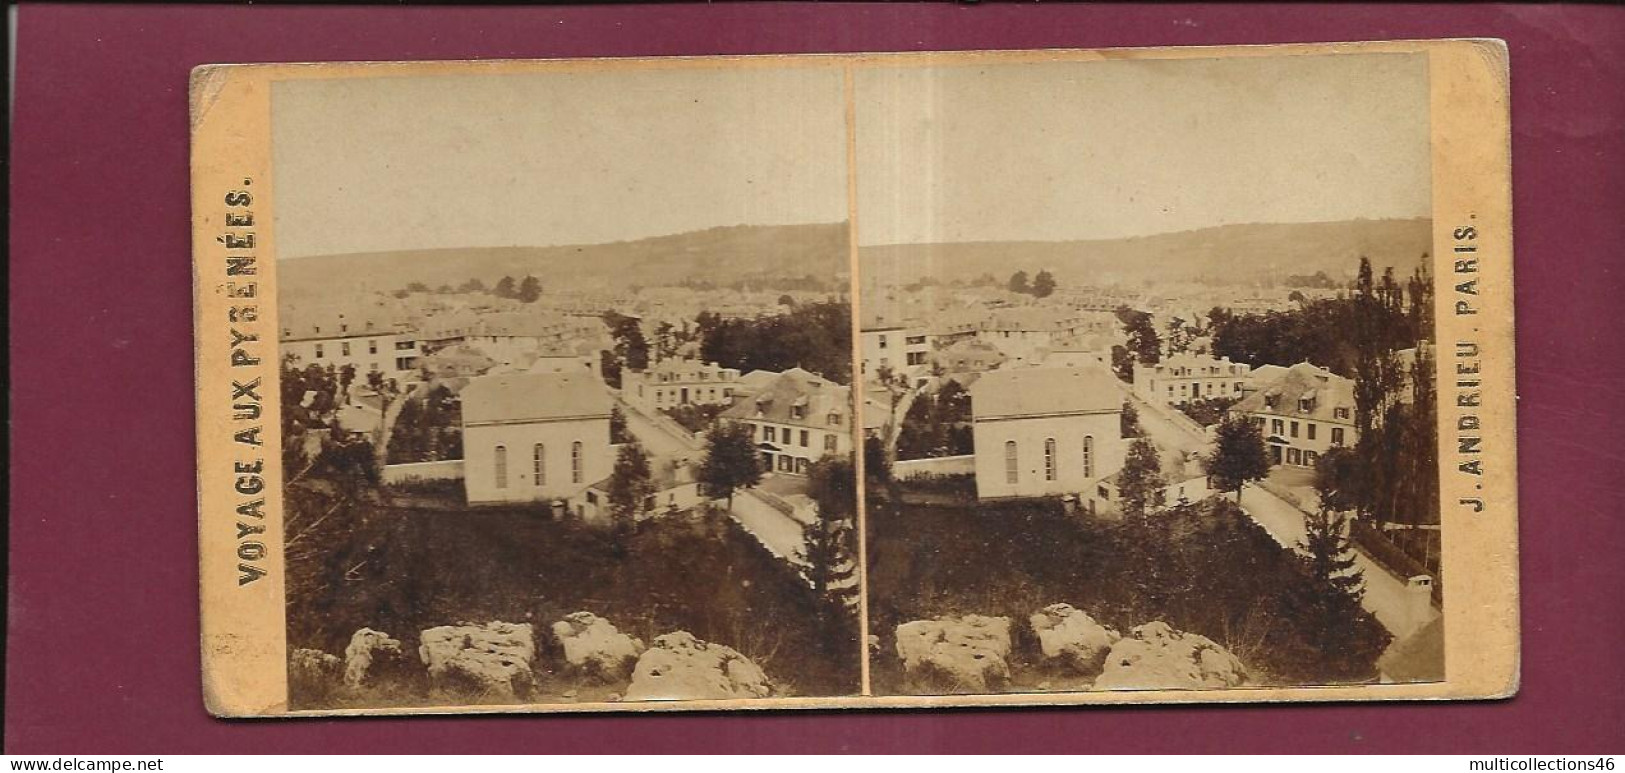 190424 - PHOTO STEREO PAPIER - VOYAGE AUX PYRENEES J ANDRIEU PARIS - BAGNERES DE BIGORRE Vue Prise De Lapeyrère - Photos Stéréoscopiques